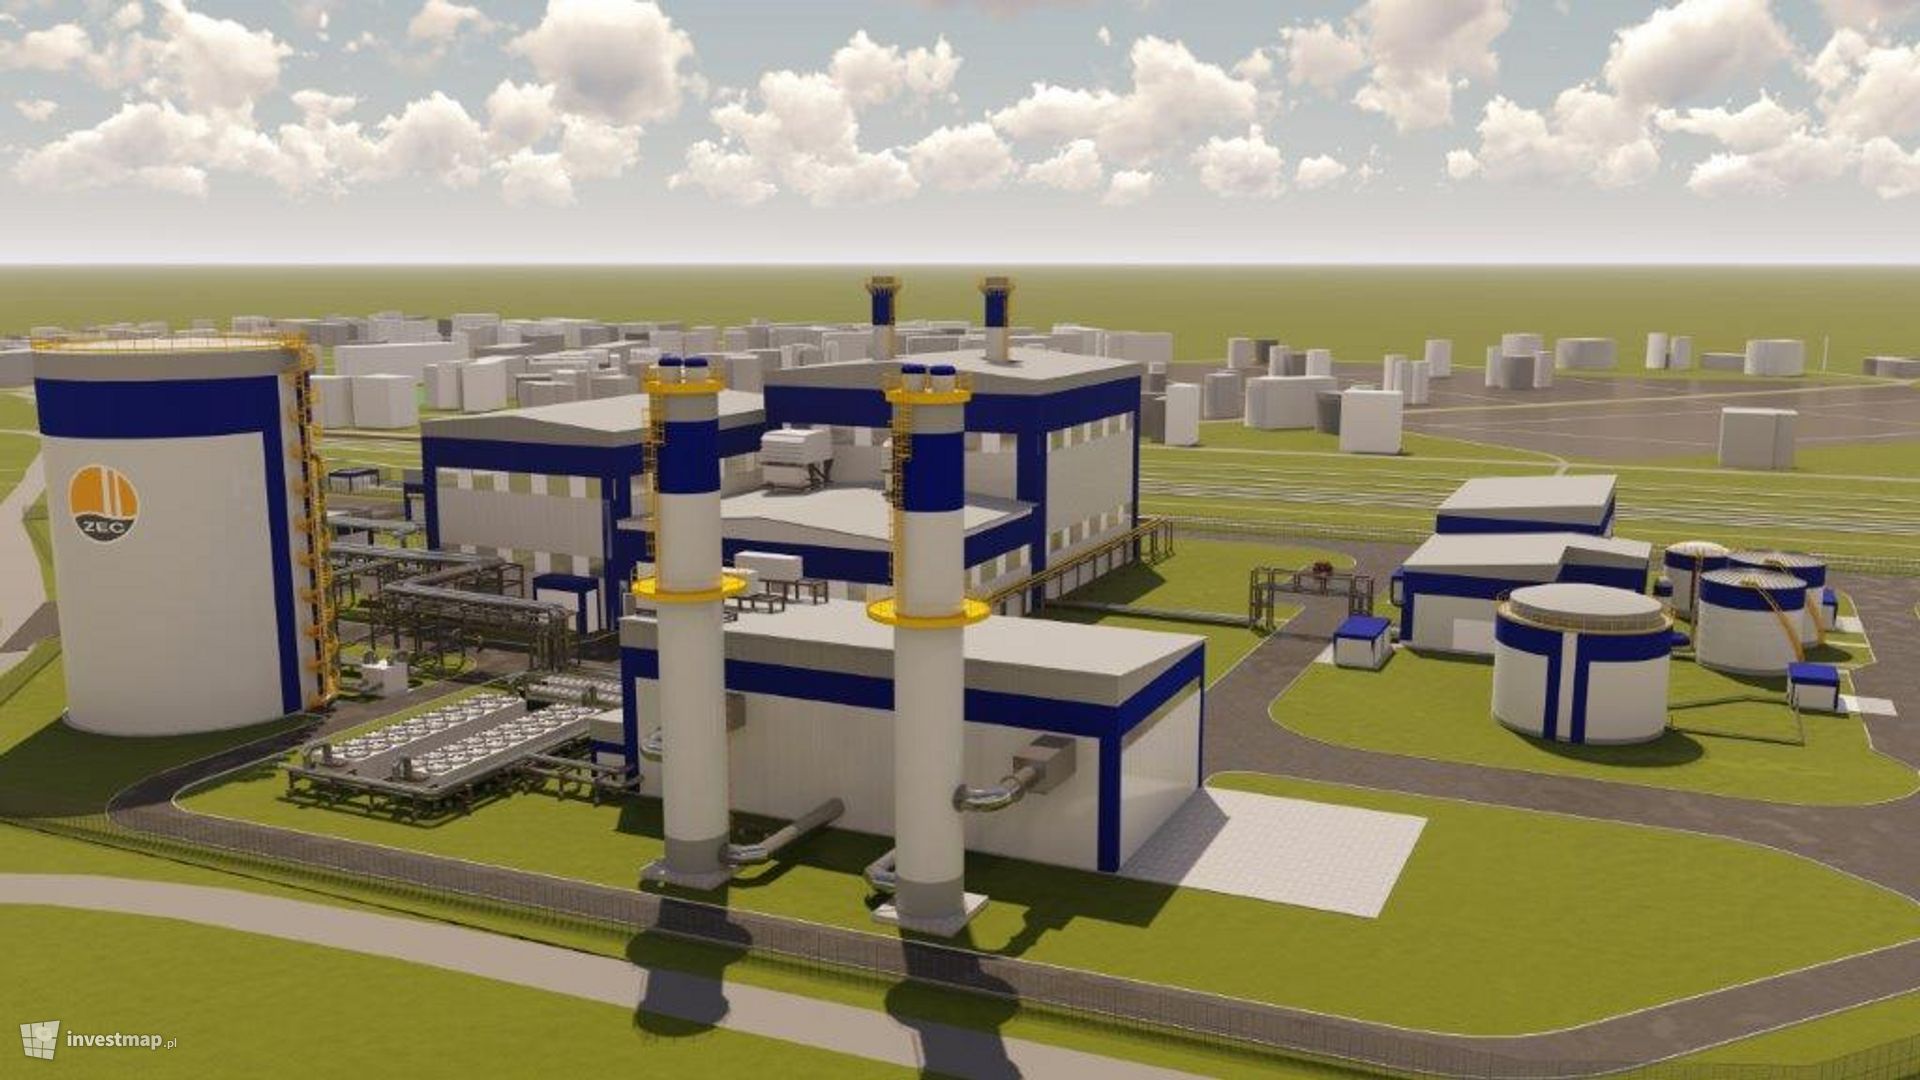 KOGENERACJA S.A. podpisała kolejną umowę na dofinansowanie budowy nowej, wielkiej elektrociepłowni pod Wrocławiem